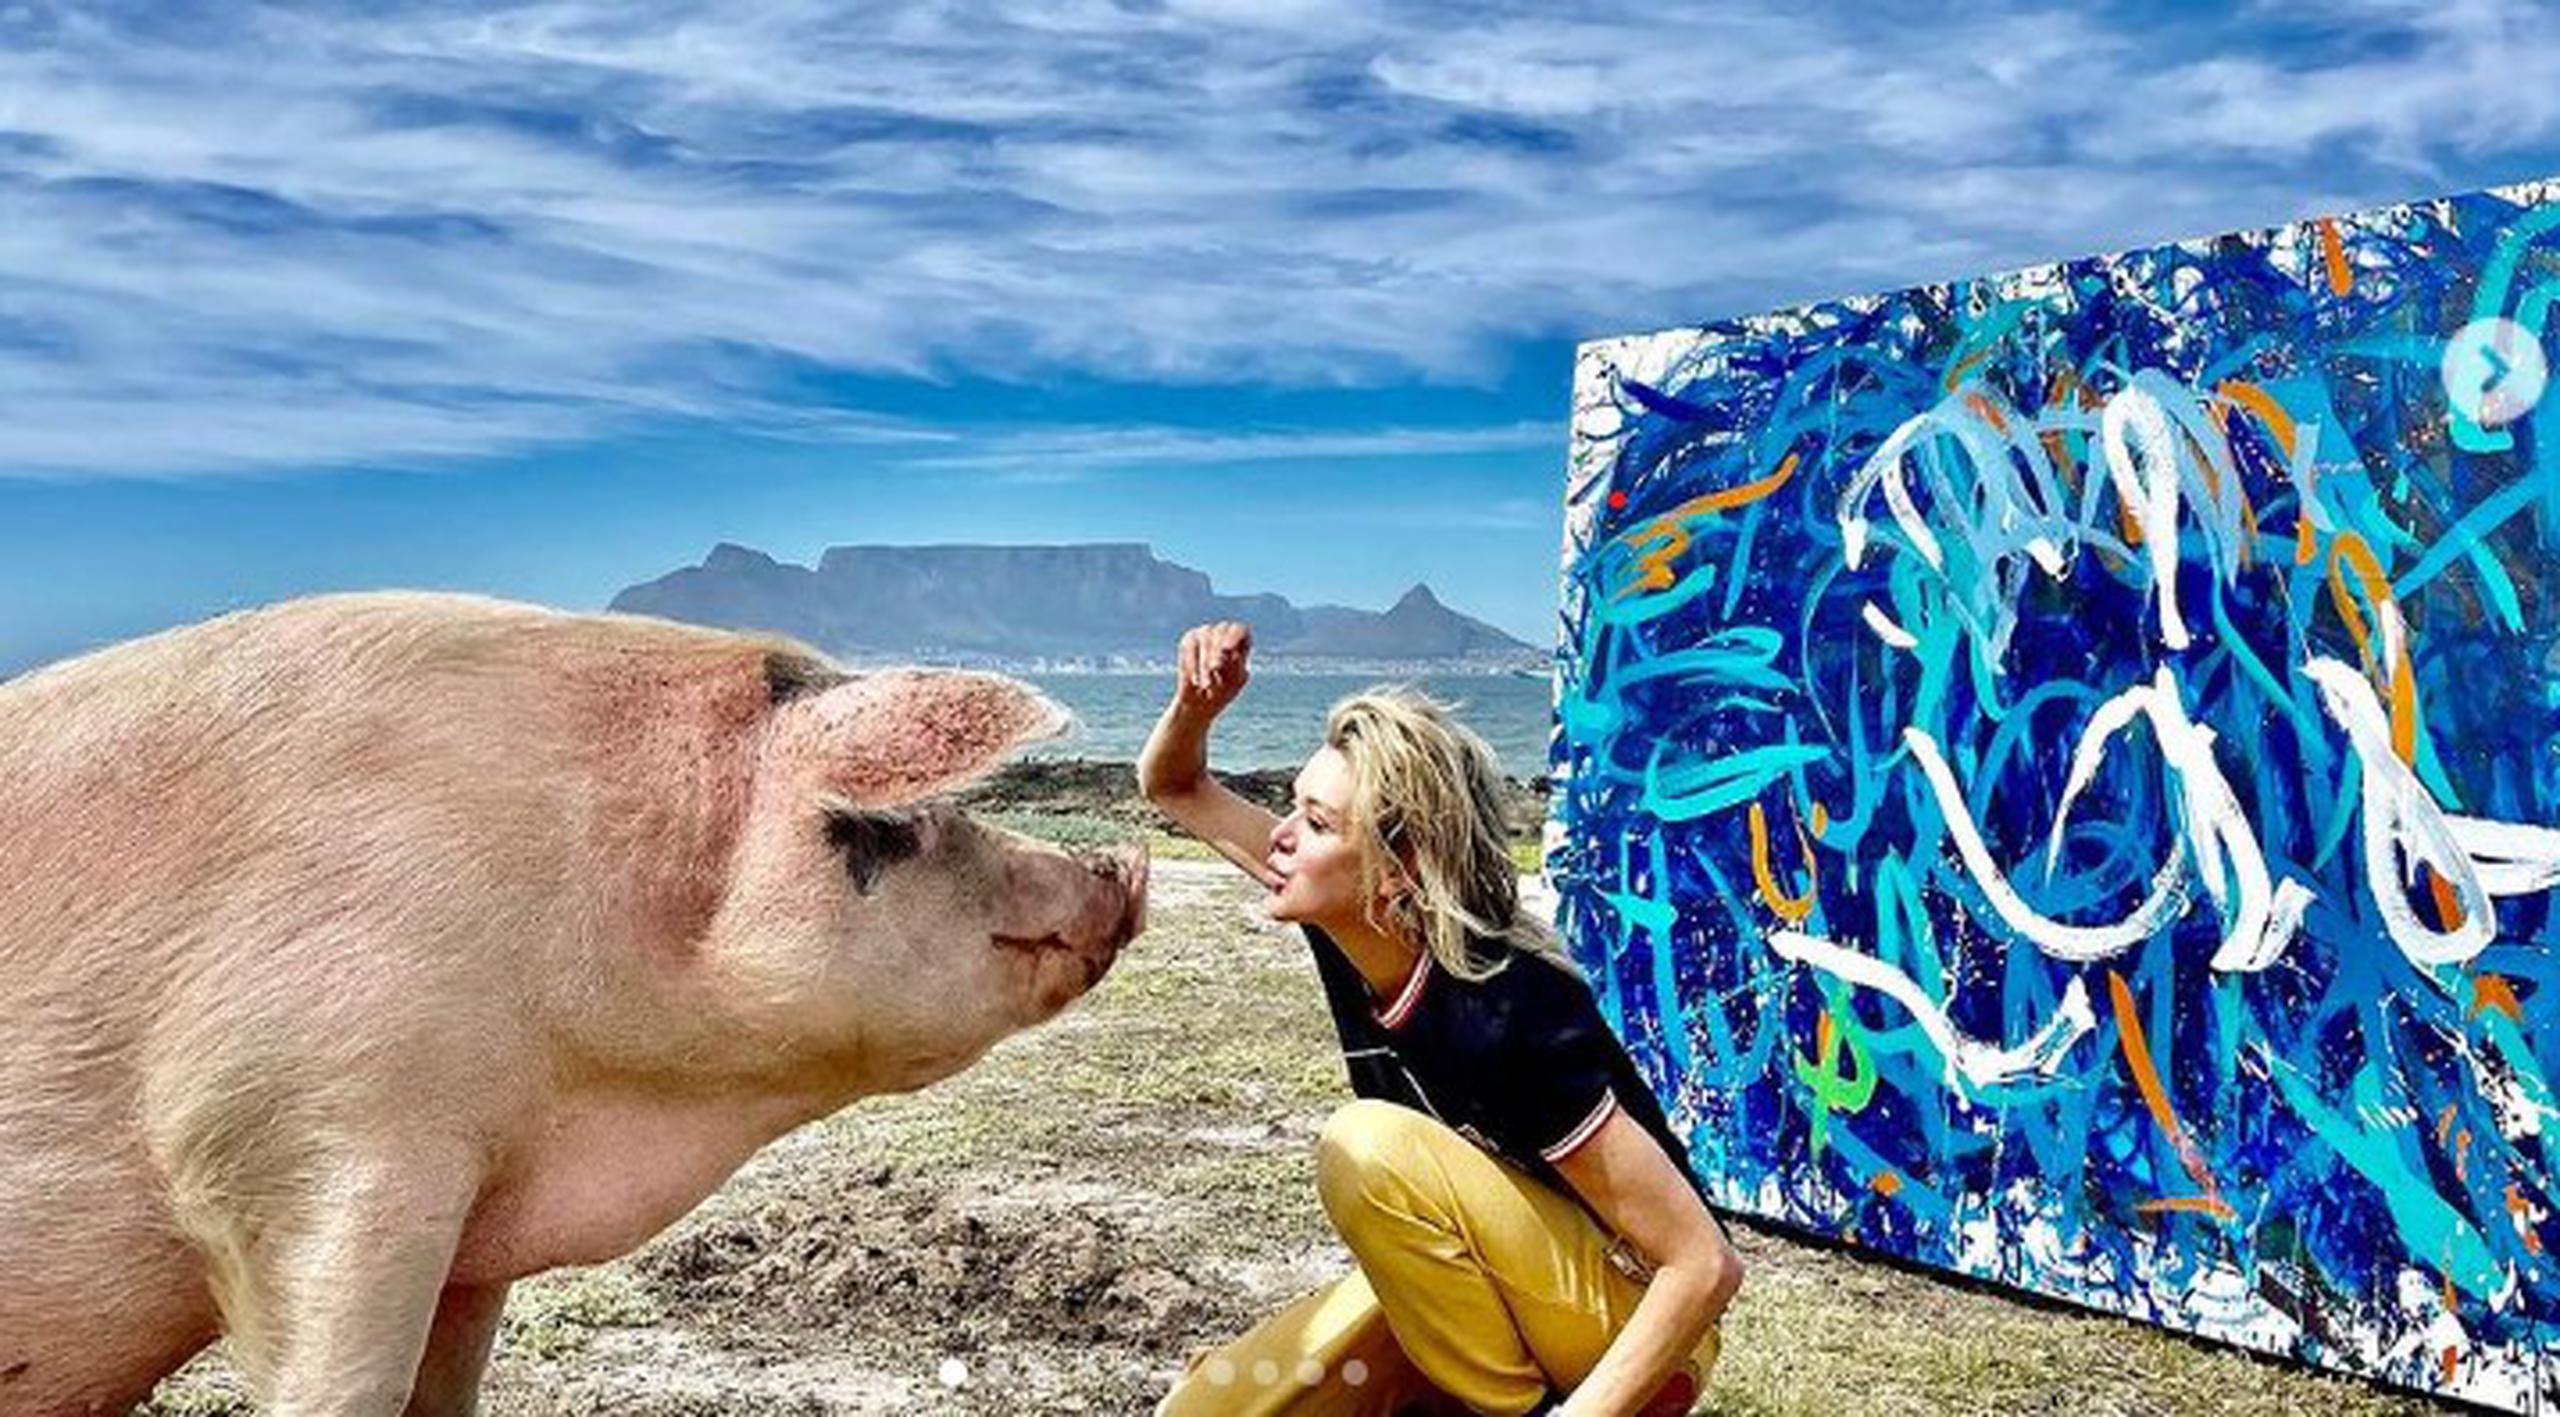 La cerda llamada "Pigcasso" fue salvada de una muerte segura por la activista Joanne Lefson, quien se percató que el animal había roto todos sus juguetes, menos un pincel. De ahí que la introdujera al uso de pinturas frente a un lienzo.